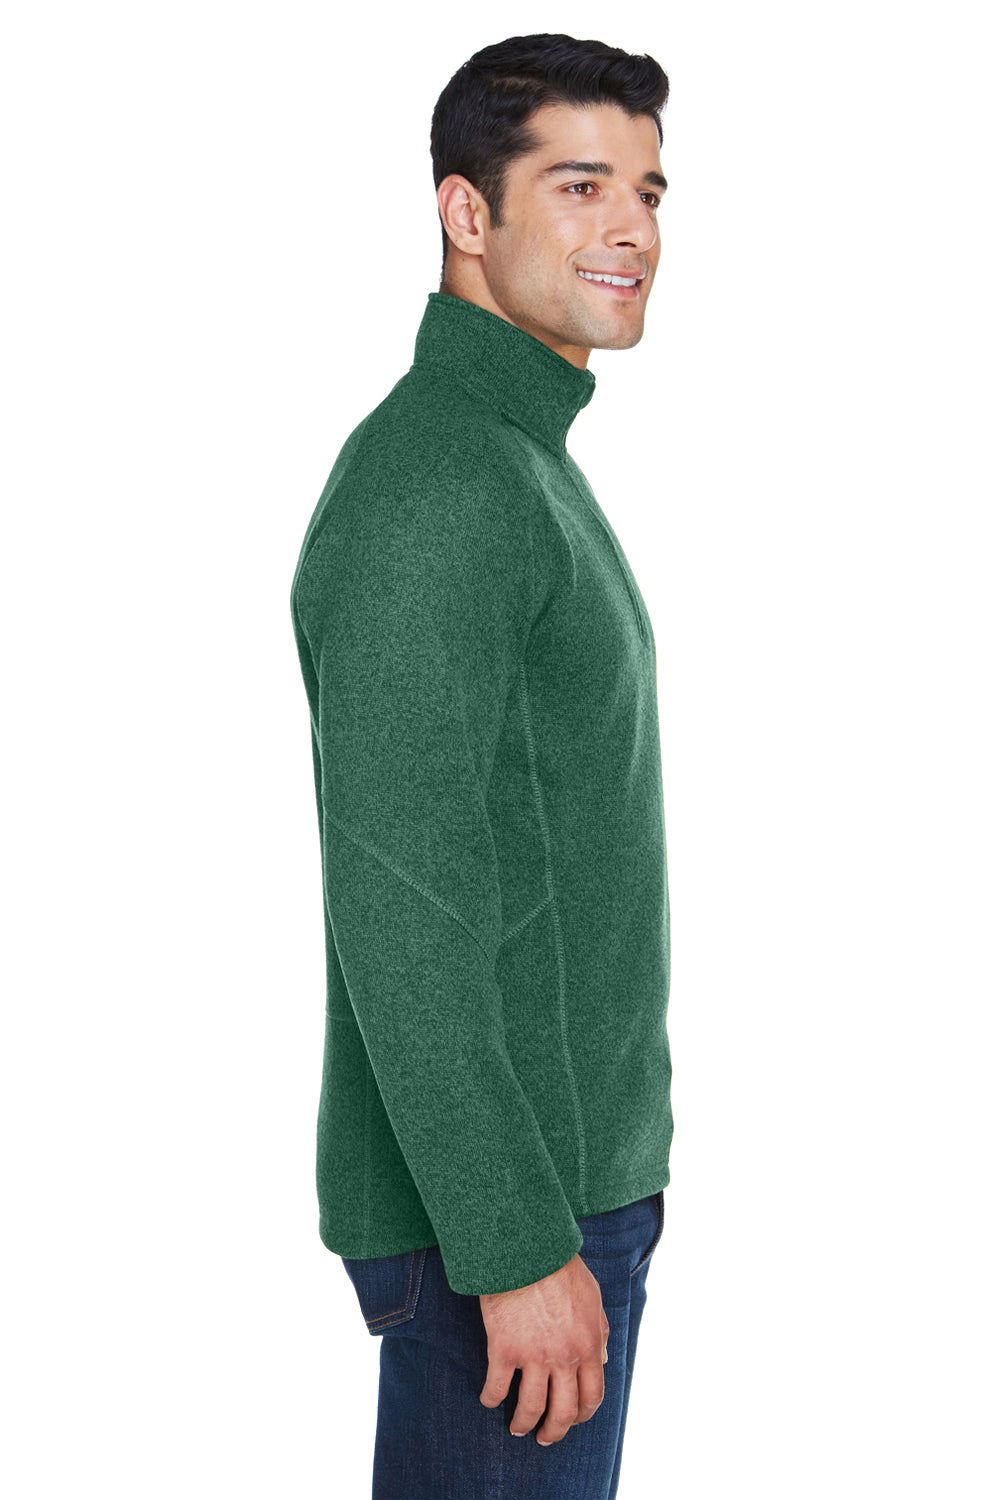 Devon & Jones DG792 Mens Bristol Sweater Fleece 1/4 Zip Sweatshirt Forest Green Side